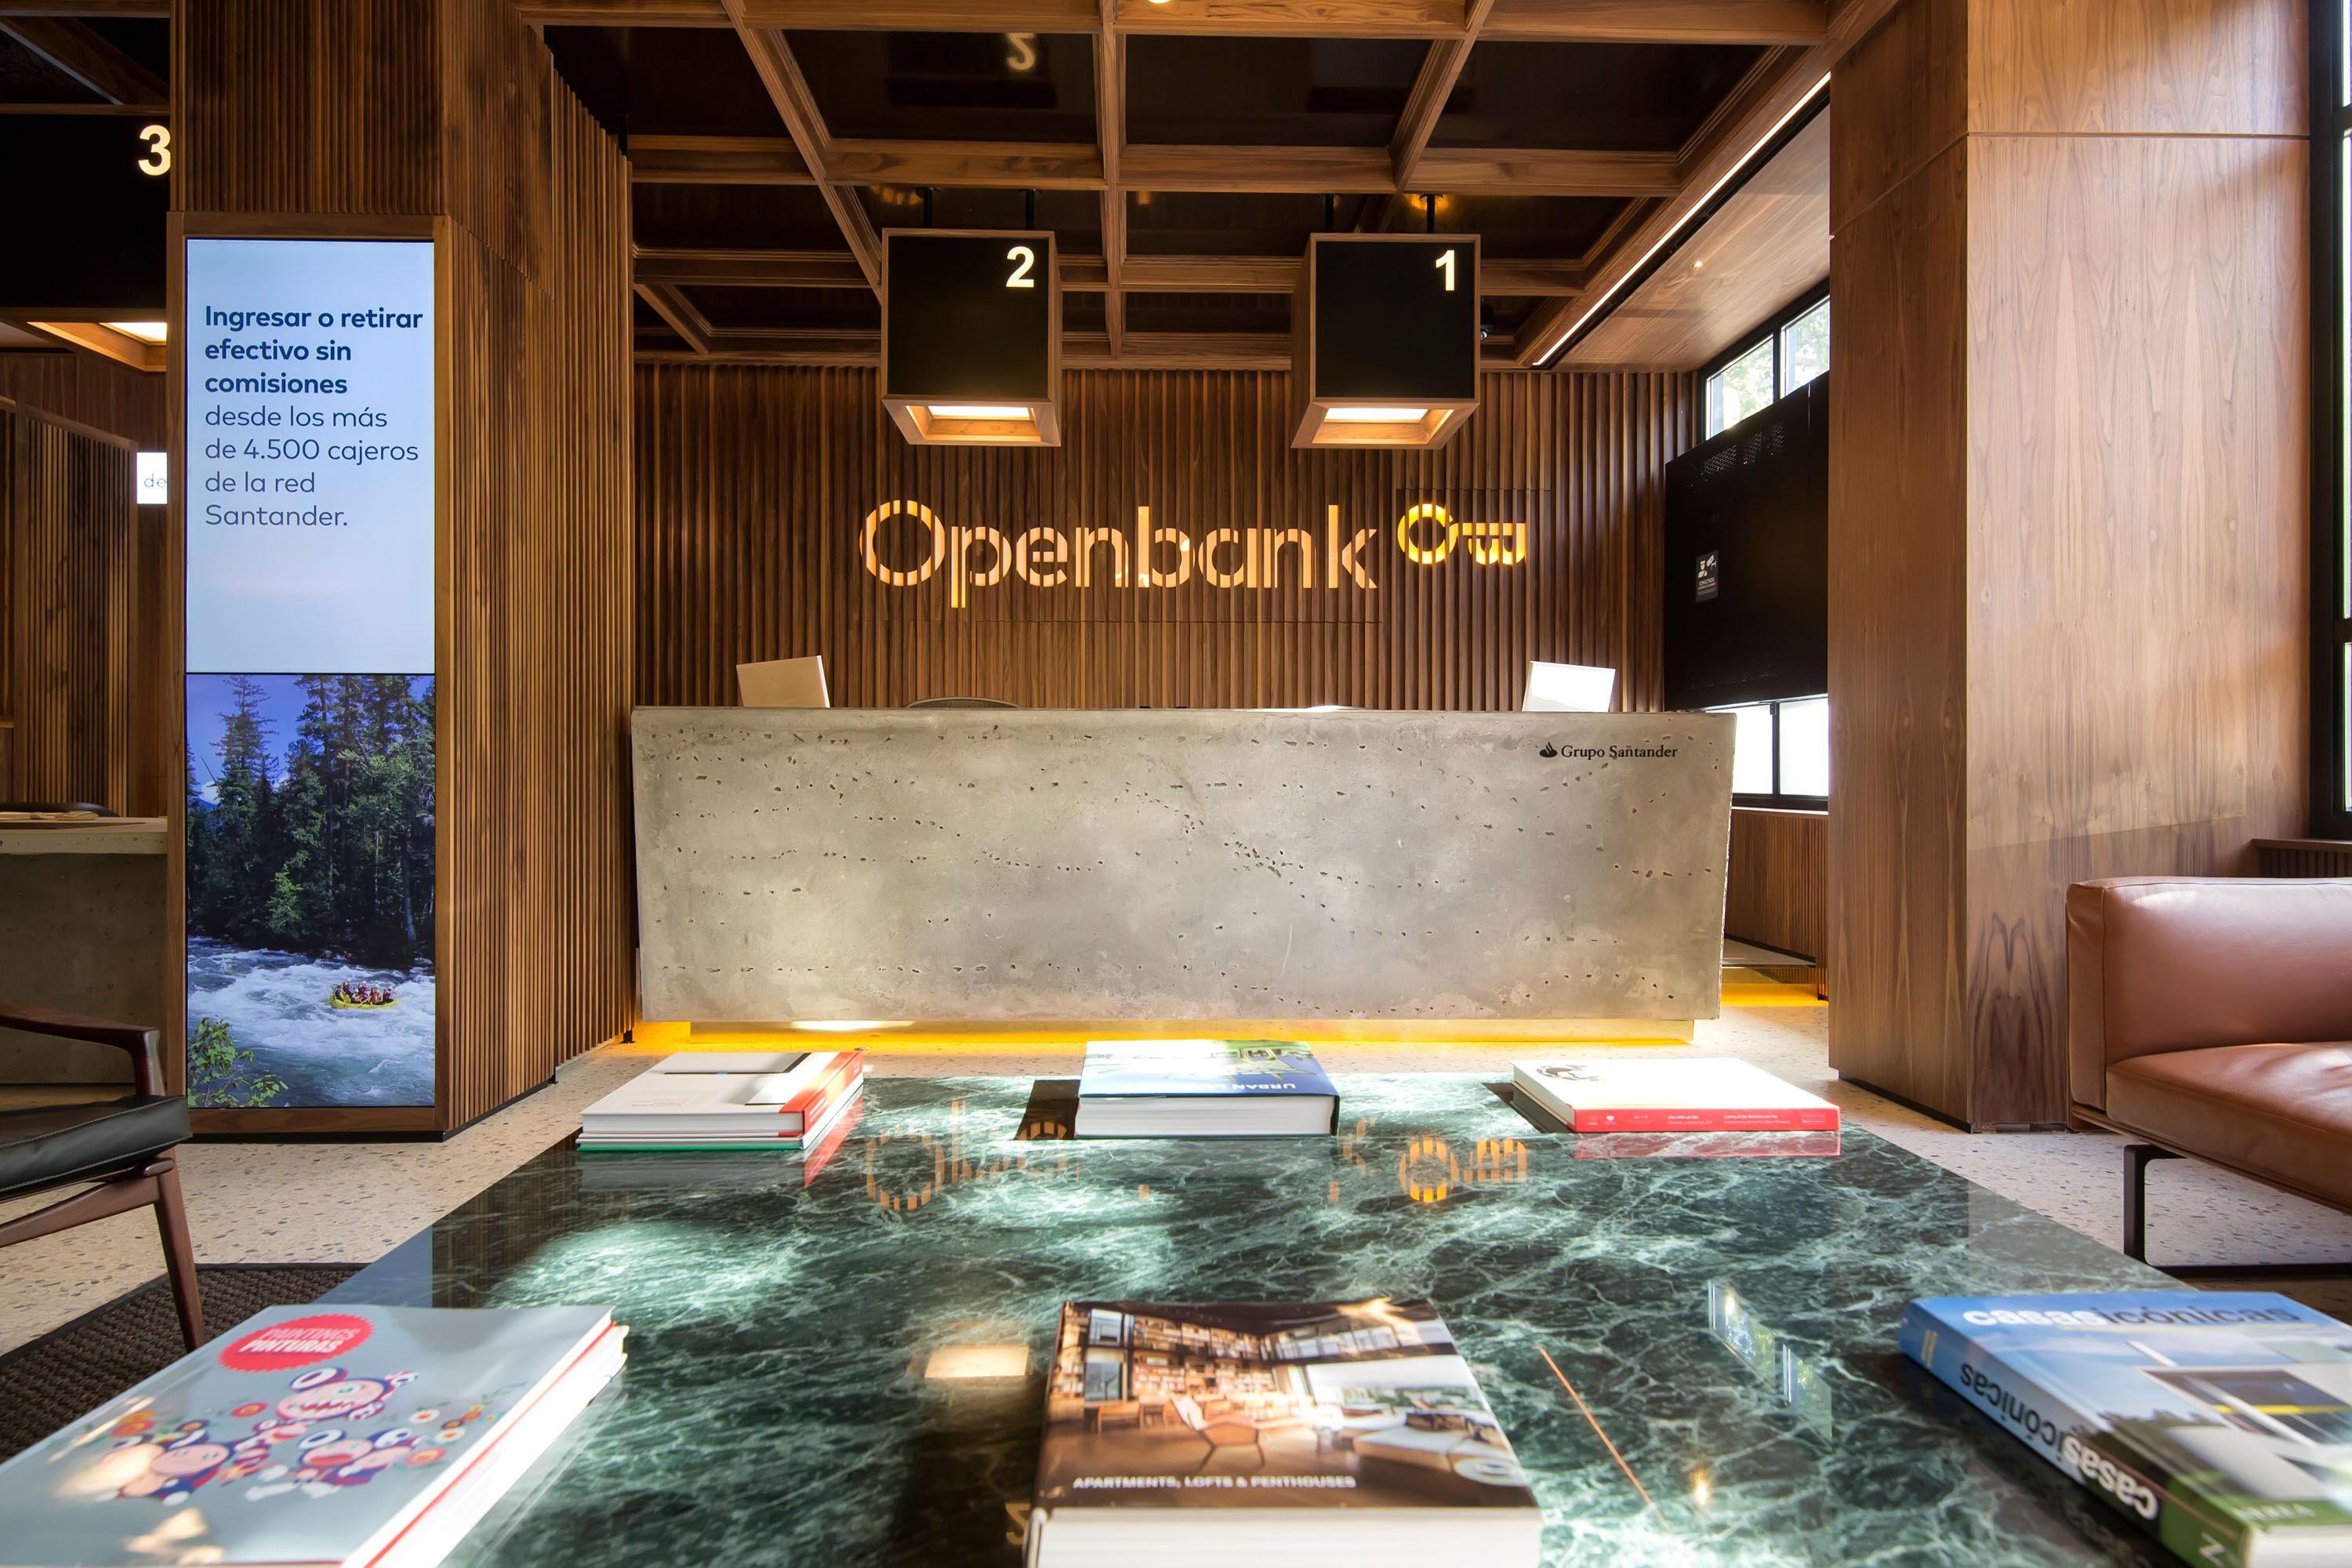 Openbank lanza la Cuenta de Ahorro Bienvenida con Nómina